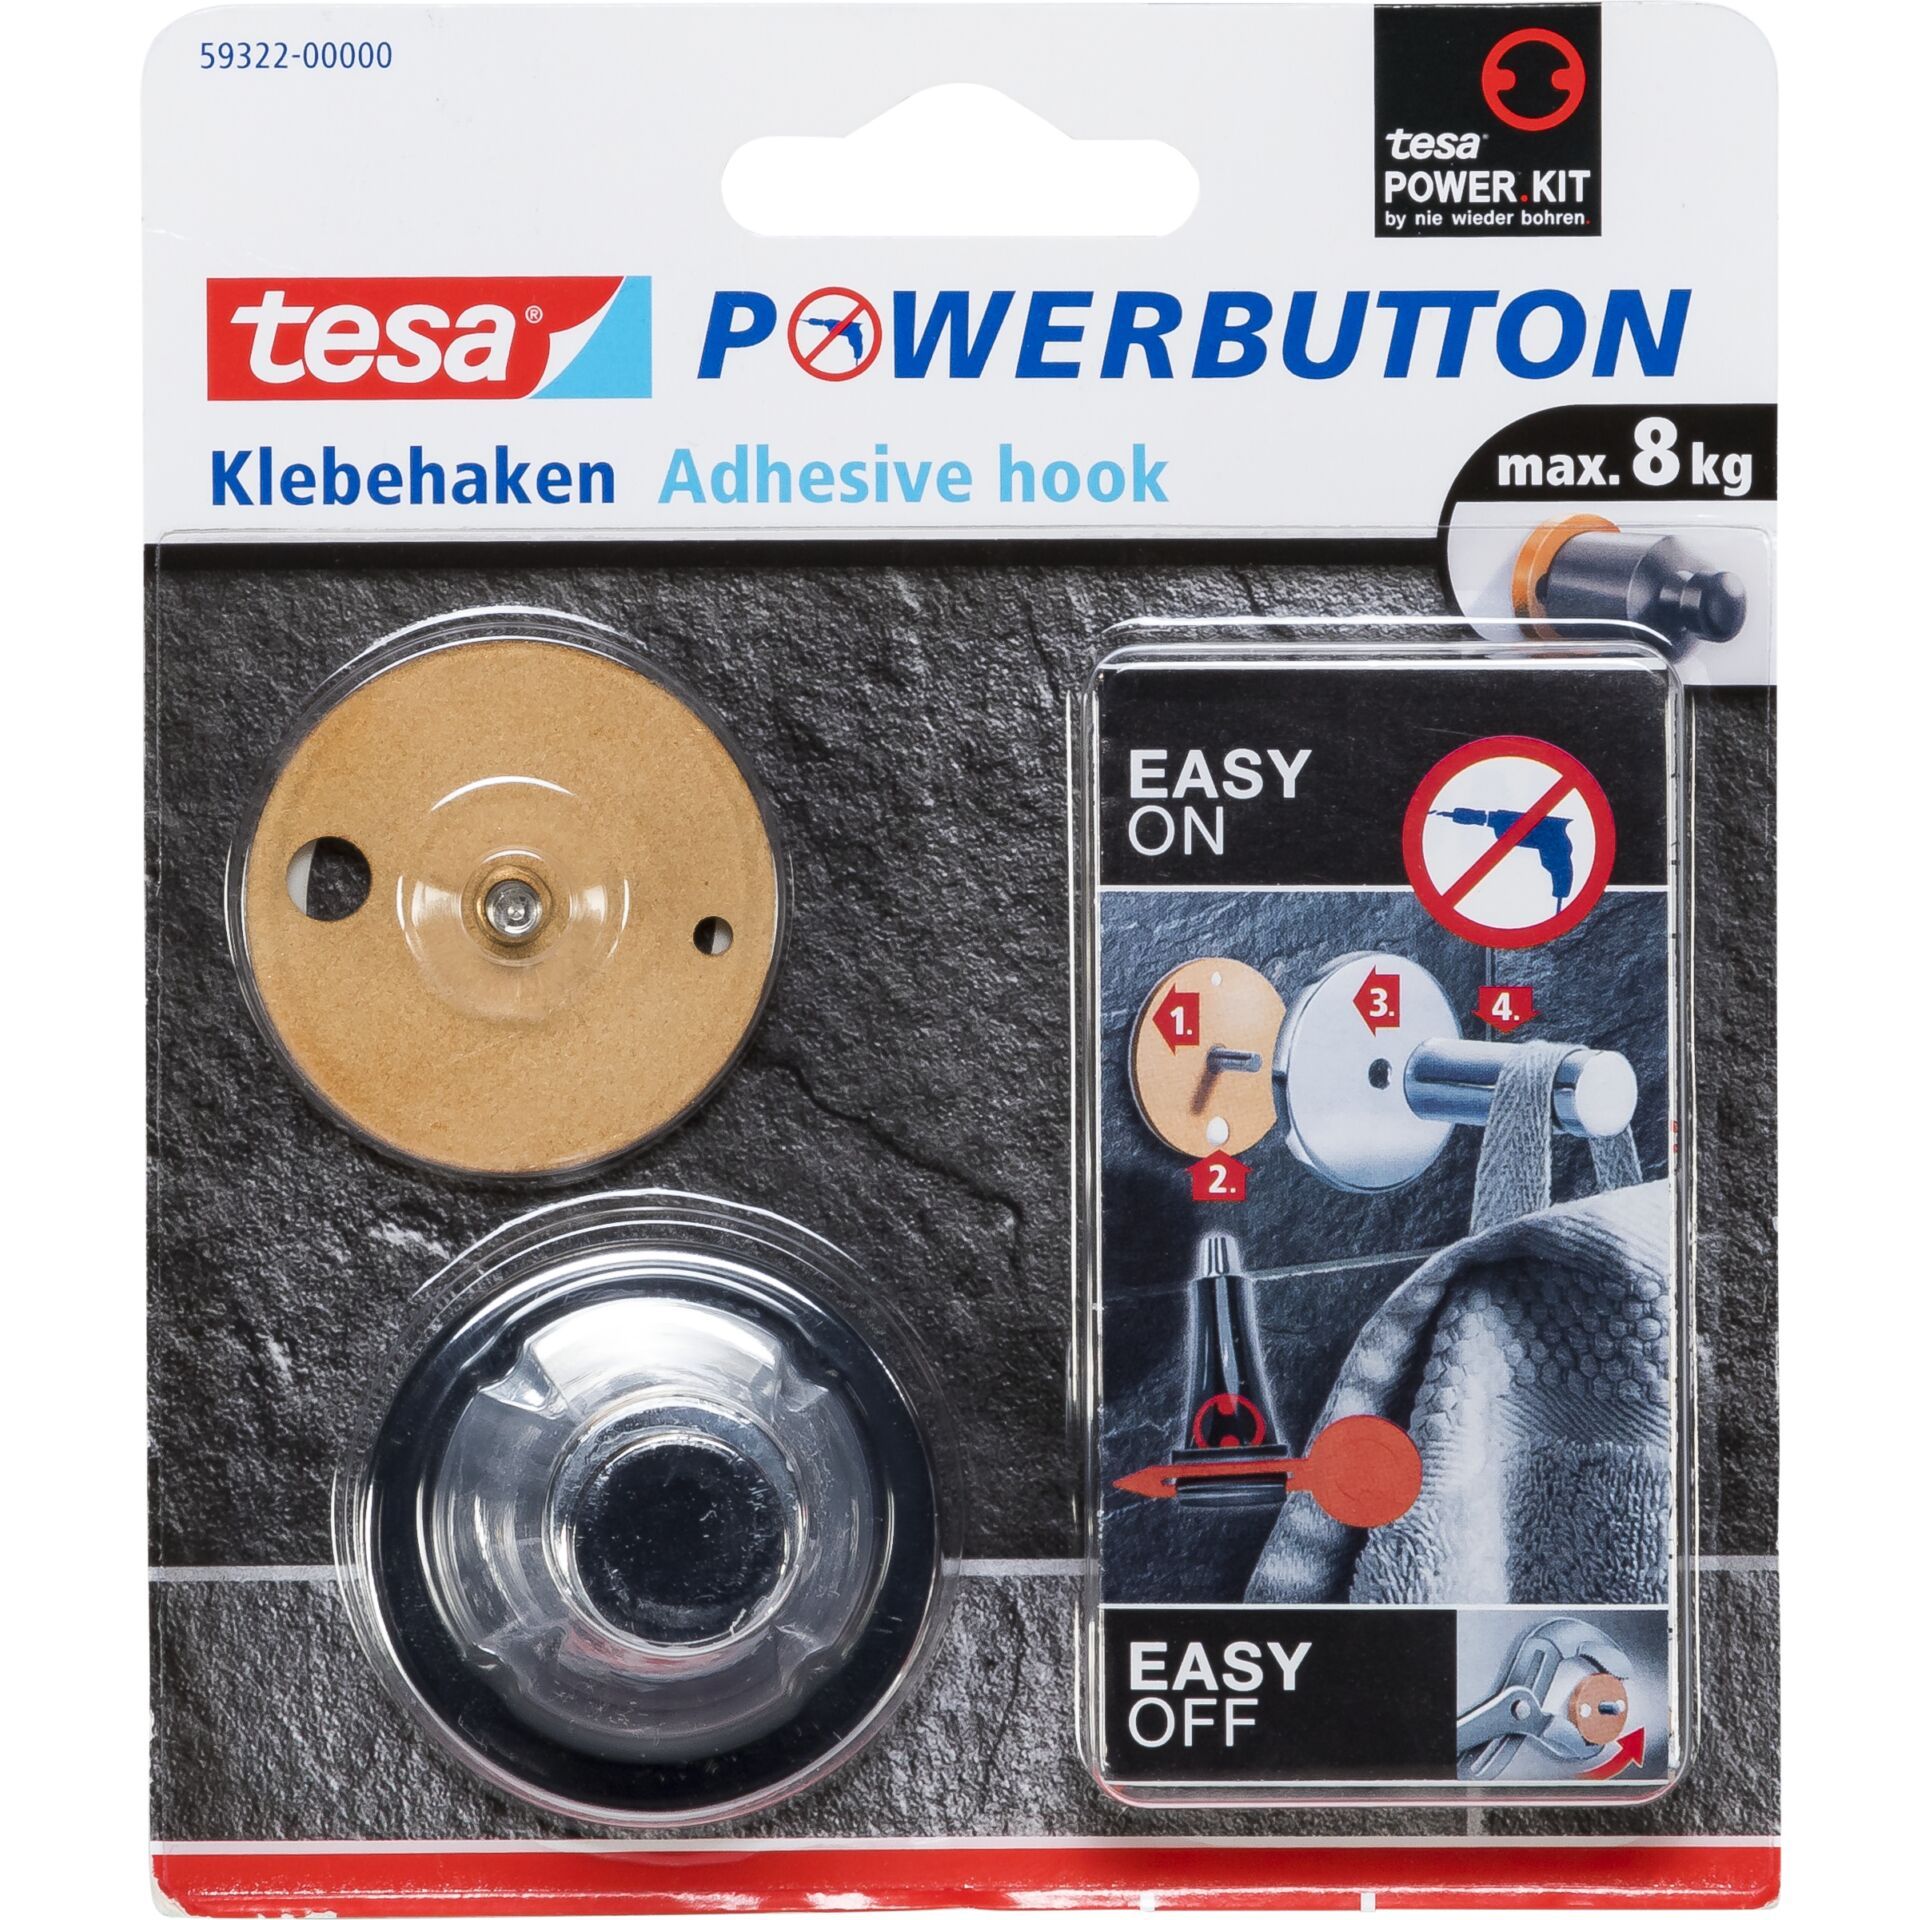 Tesa Powerbutton chrome for max. 8 kg